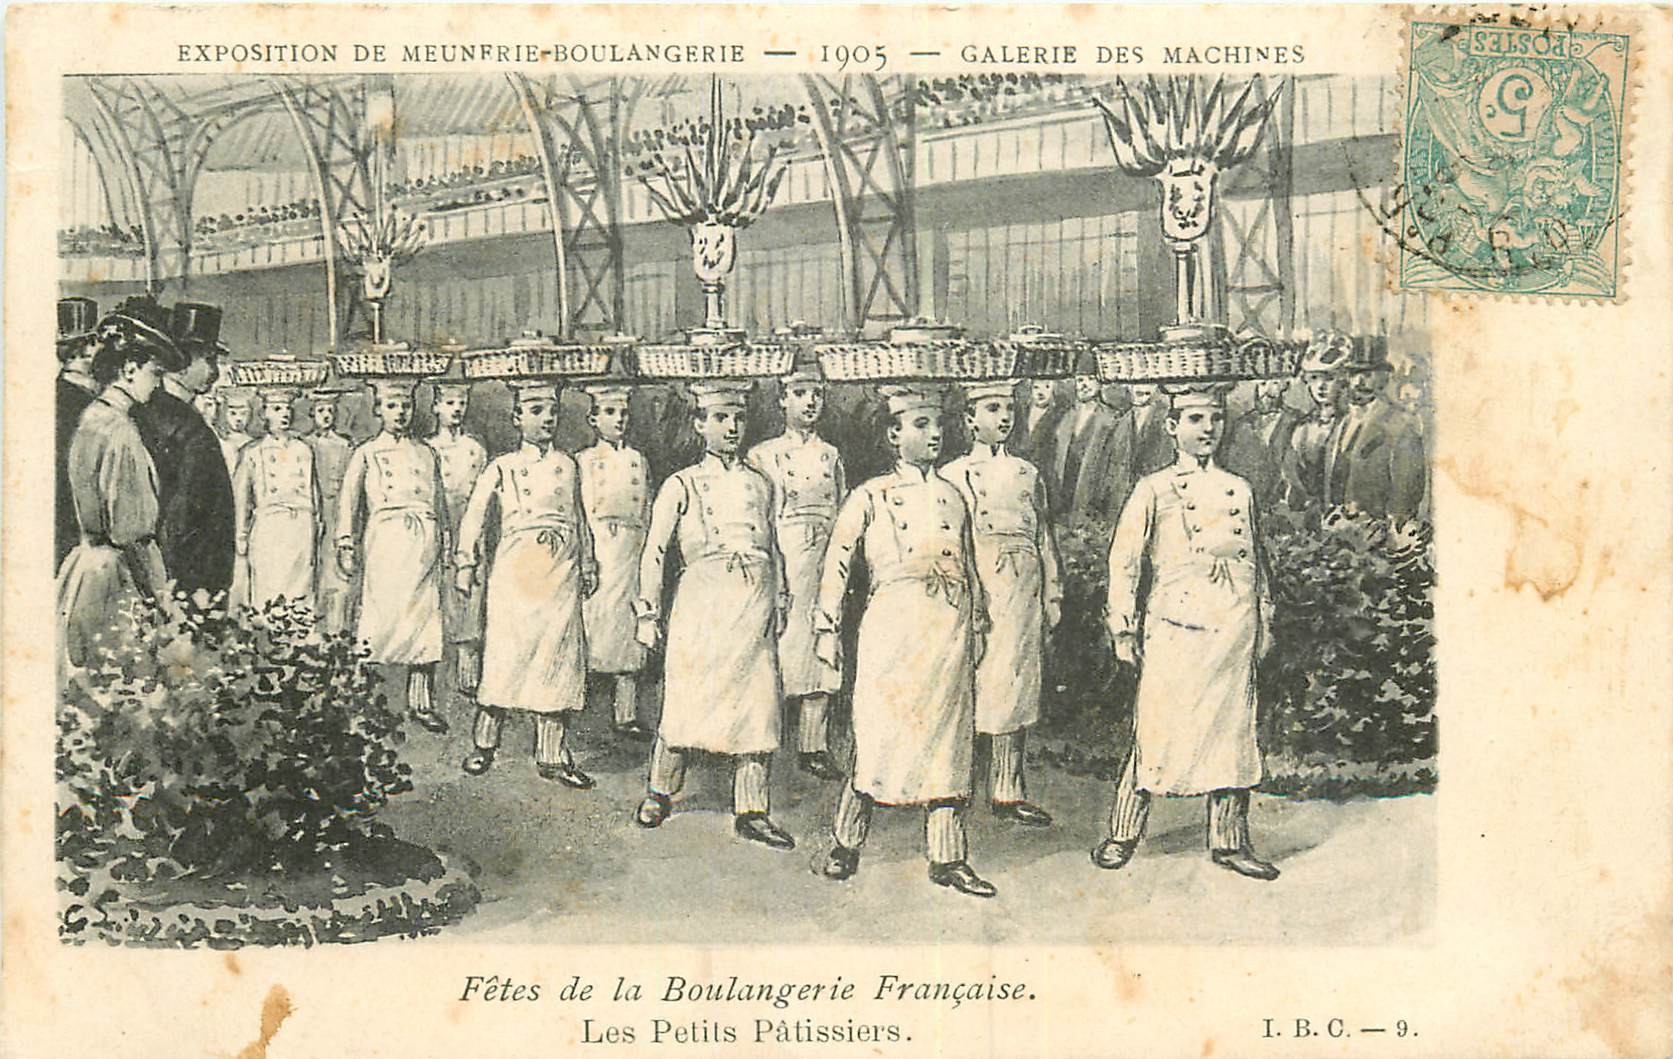 WW Paris Exposition de Meunerie Boulangerie 1905. Les Petits Pâtissiers Galerie Machines